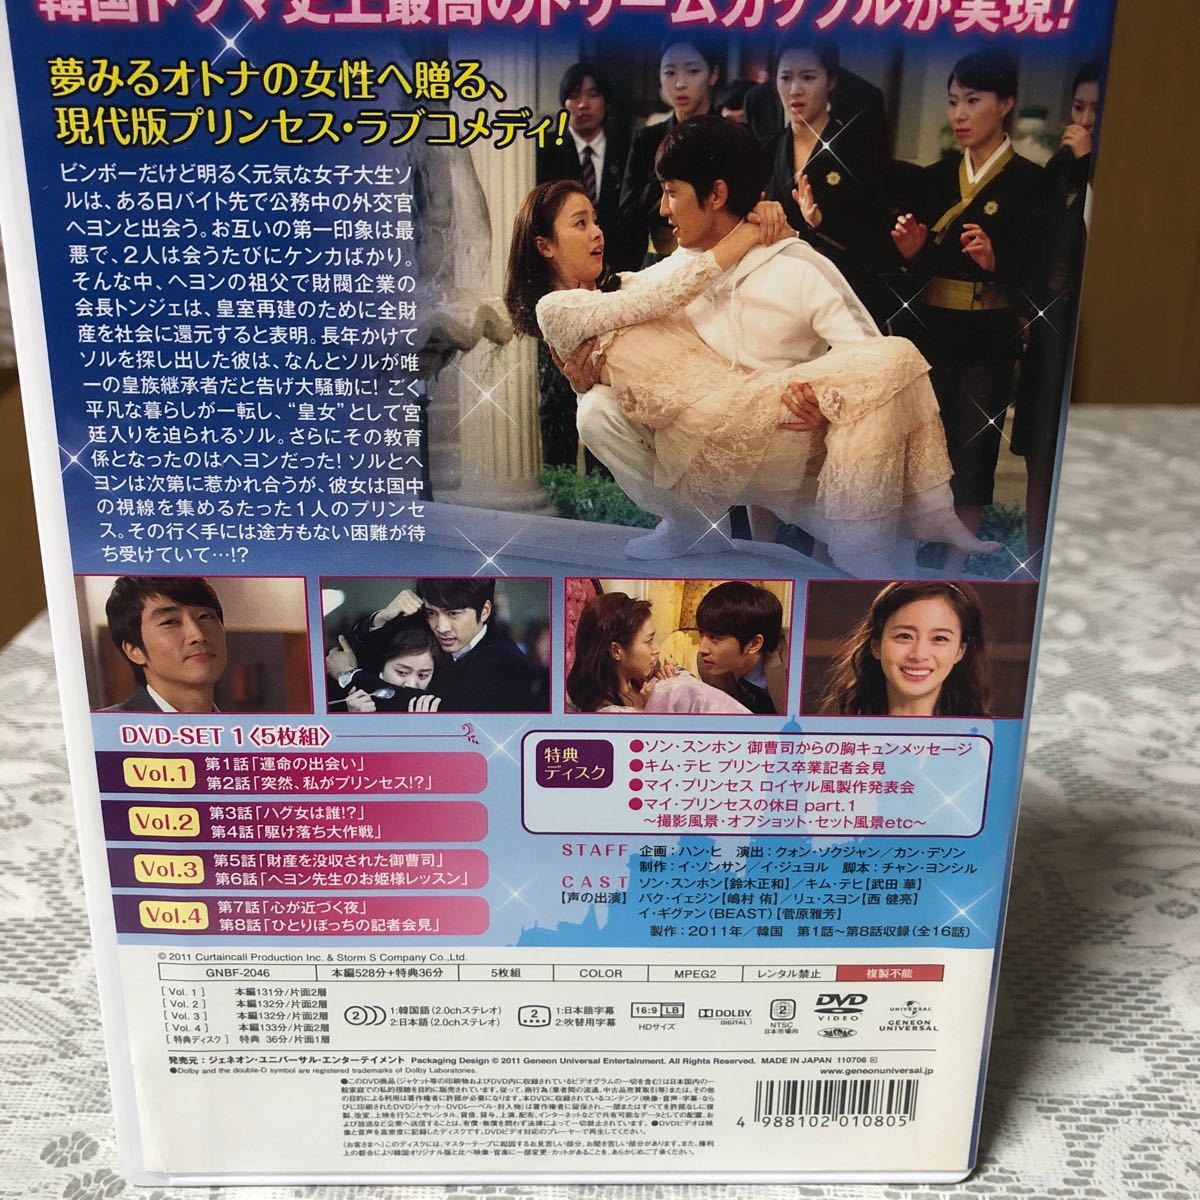 マイプリンセス 完全版 DVD-SET1